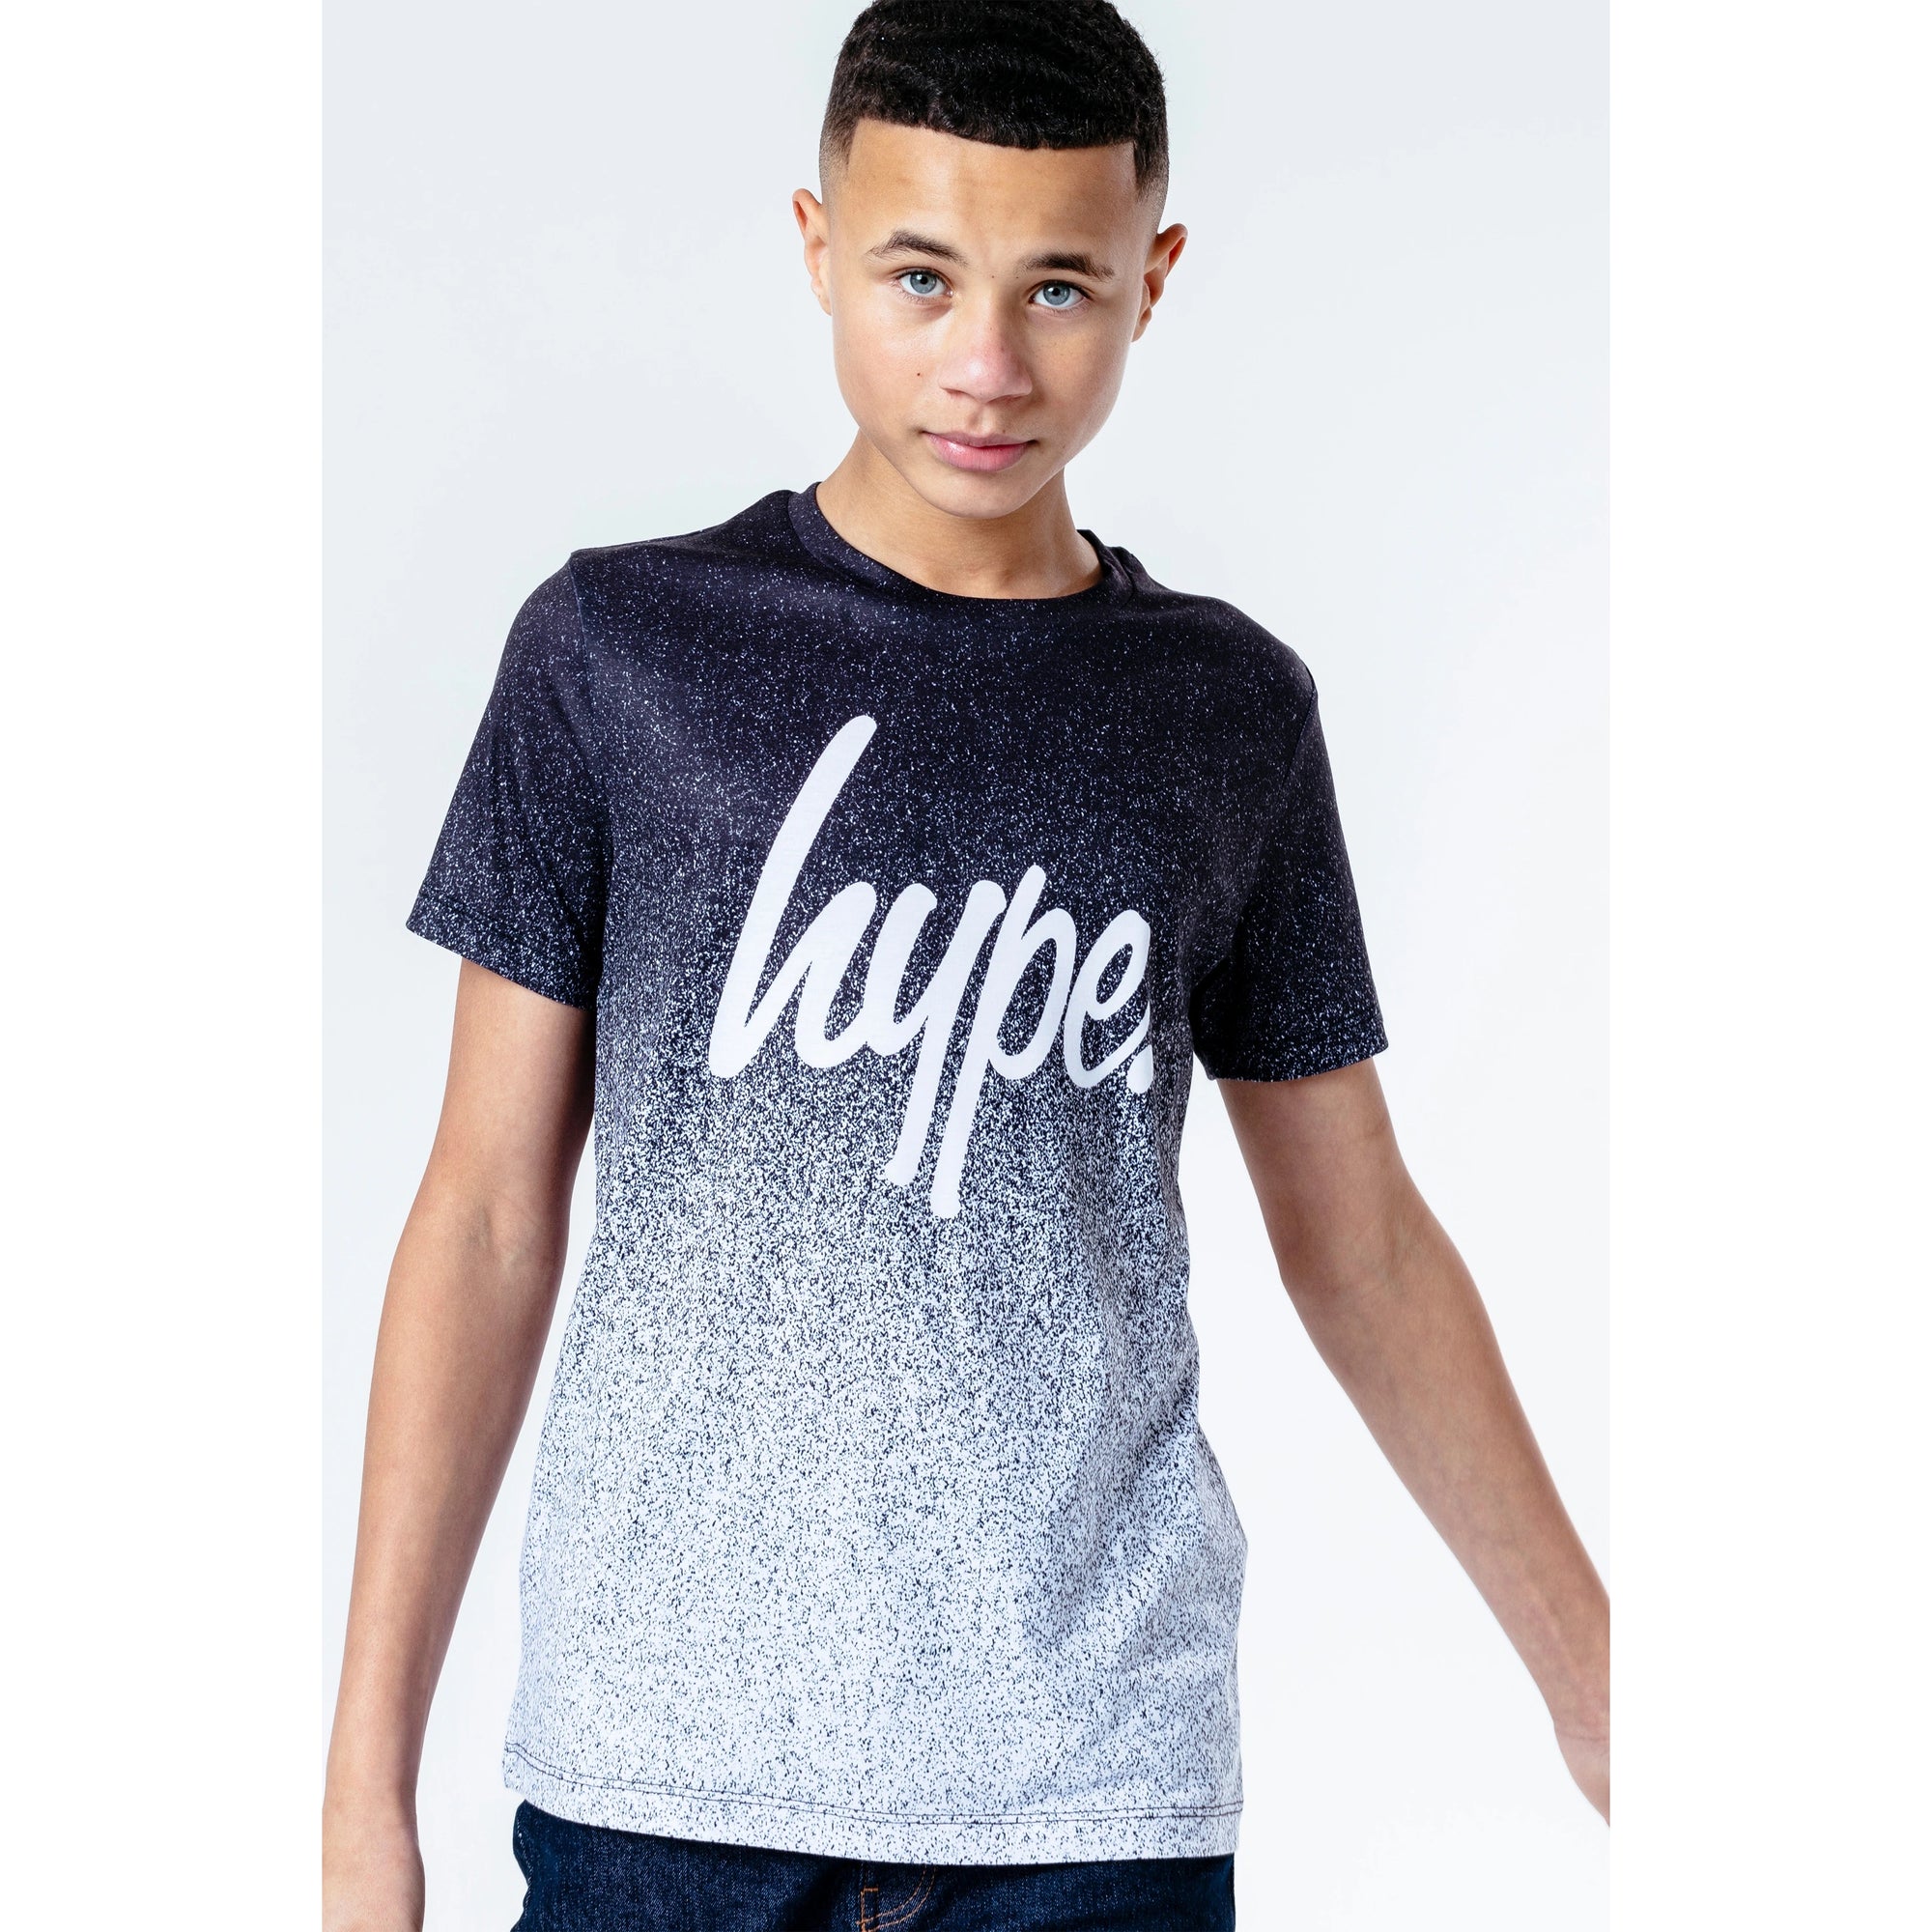 Hype Boys Speckle Fade T-Shirt Ywf264 Clothing 7/8YRS / Black,9/10YRS / Black,11/12YRS / Black,13YRS / Black,14YRS / Black,15YRS / Black